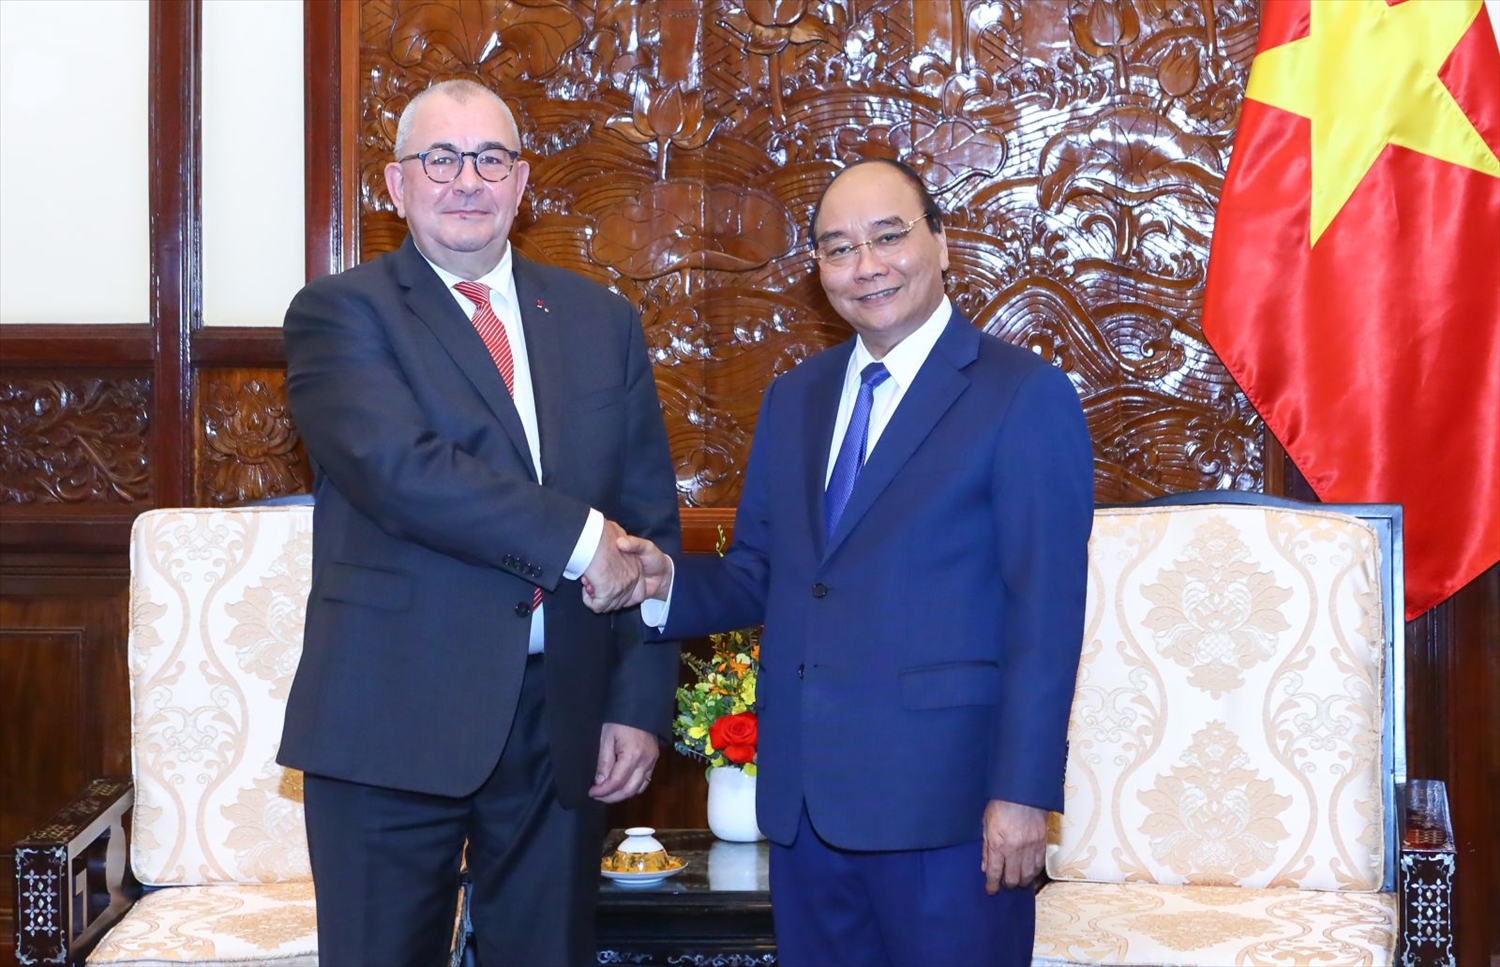 Chủ tịch nước Nguyễn Xuân Phúc tiếp Đại sứ Vương quốc Bỉ tại Việt Nam Paul Jansen. Ảnh: VPCTN